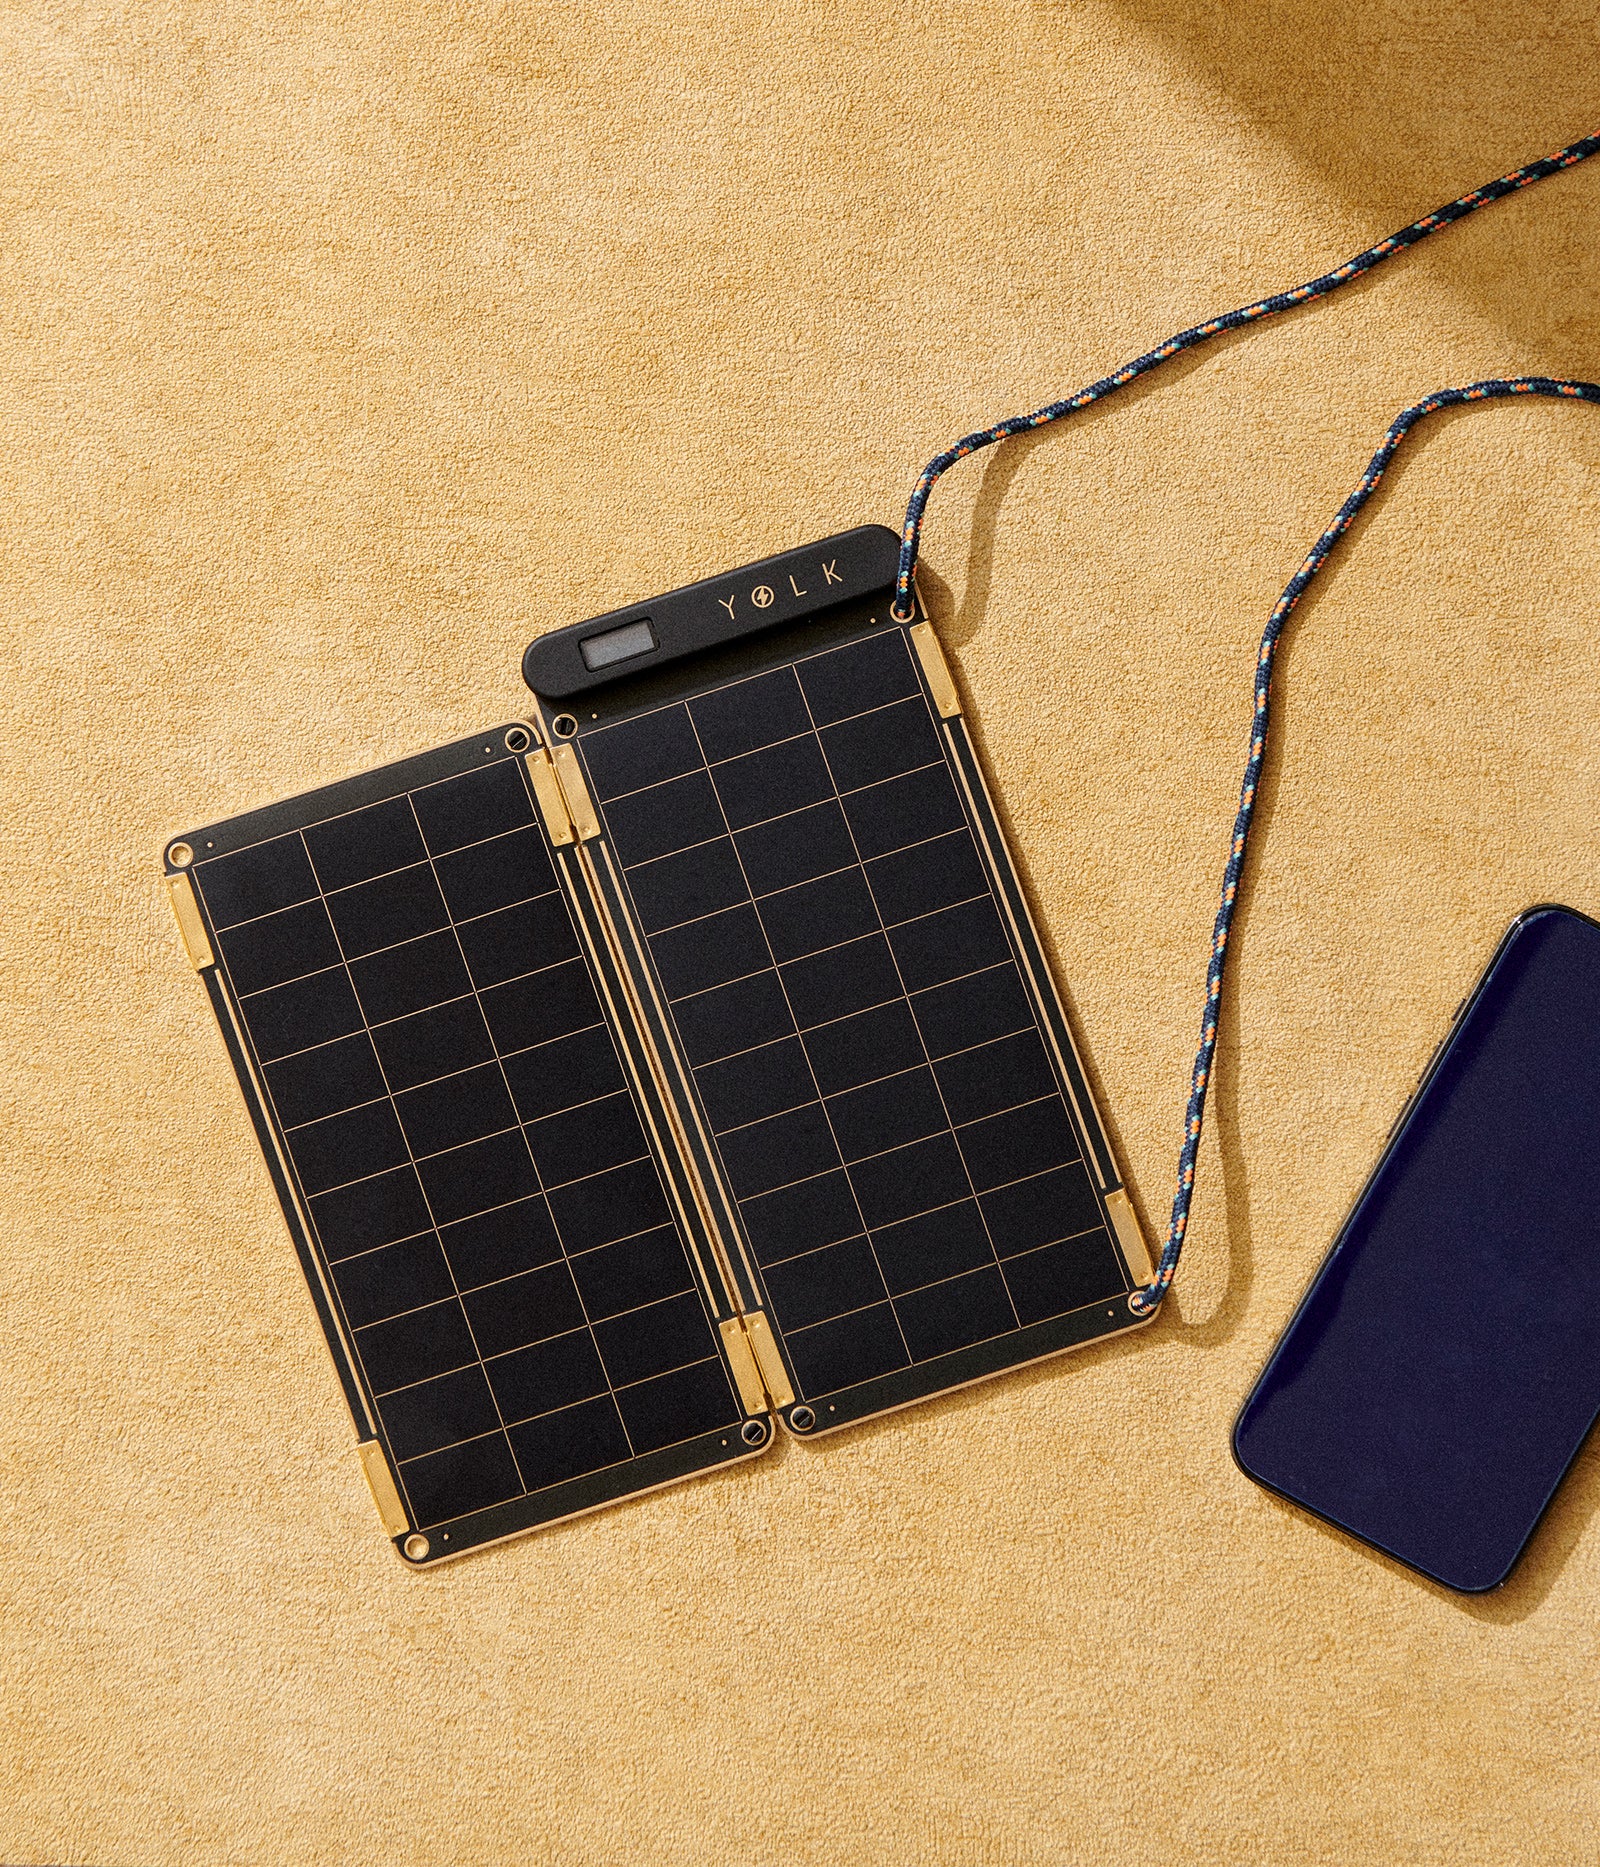 ソーラーペーパー - 太陽光パネル充電器 / モバイルバッテリー | YOLK 